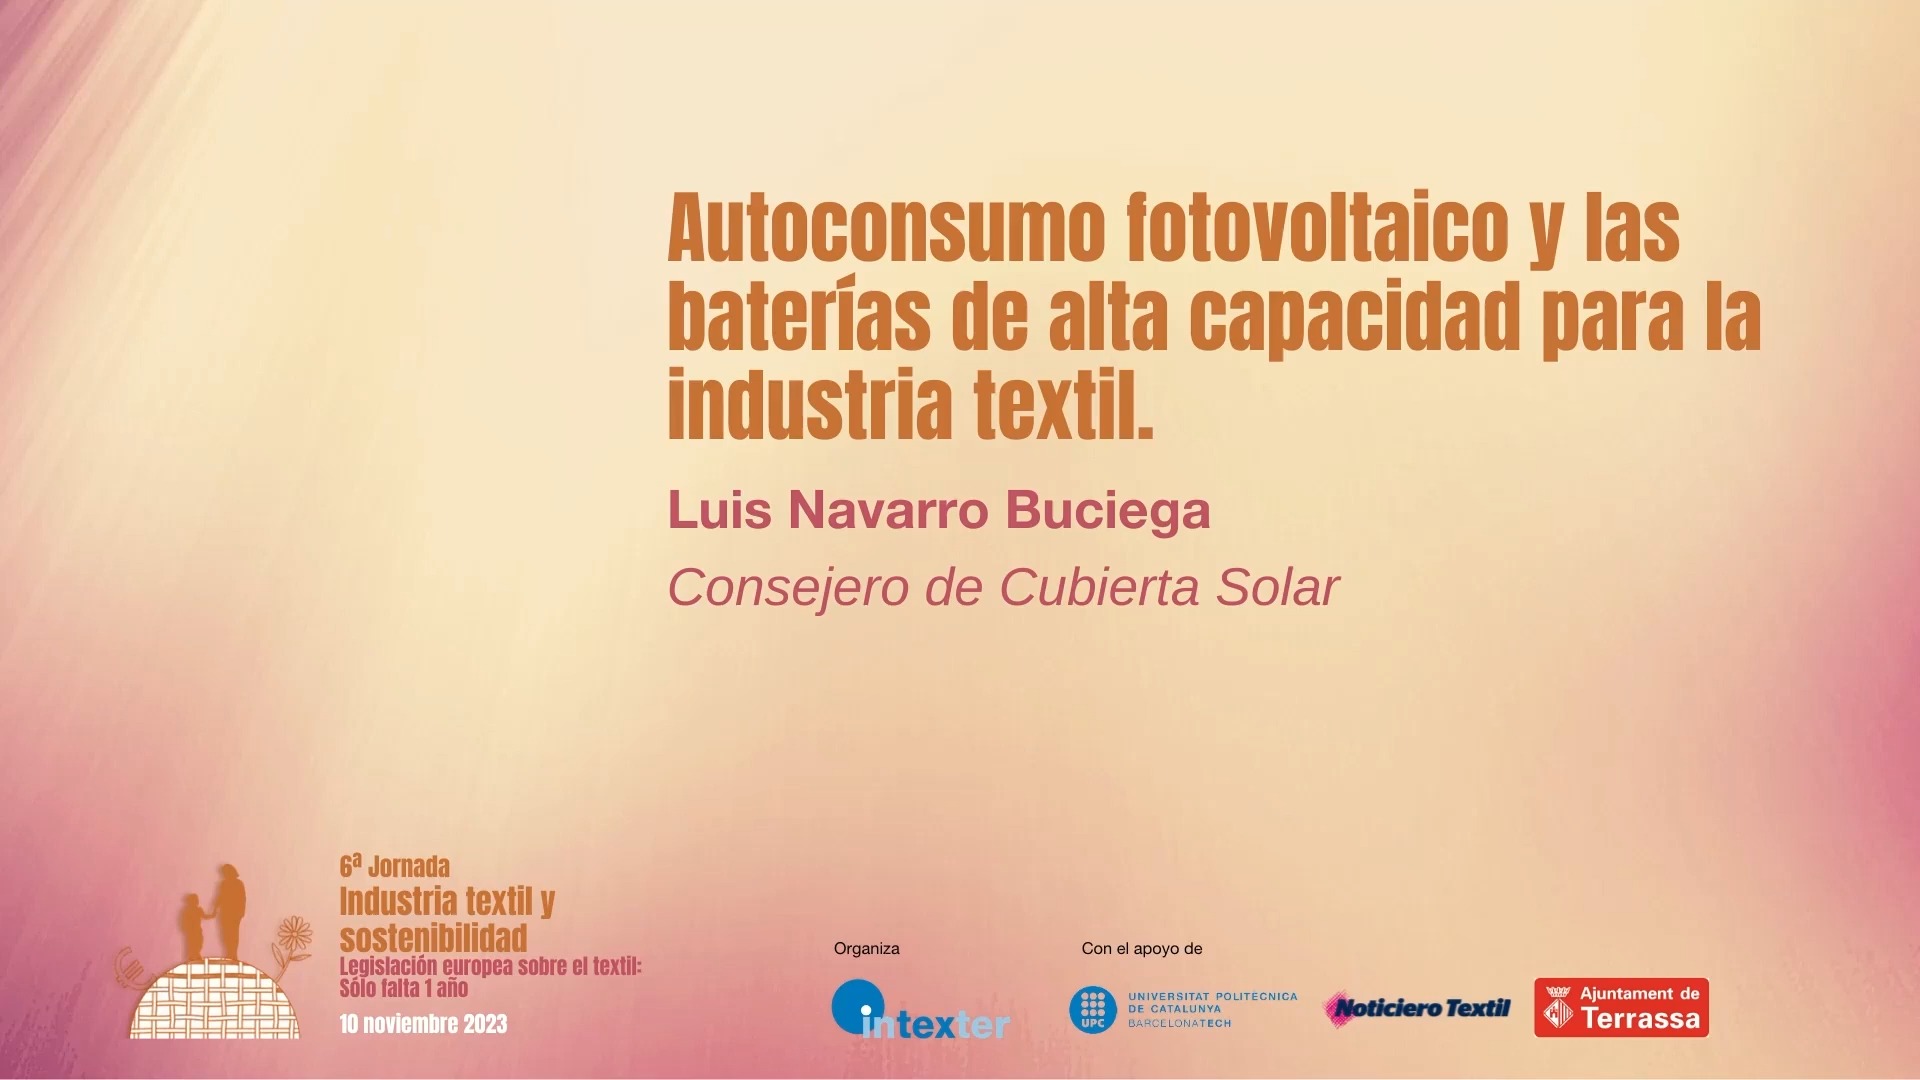 Autoconsumo fotovoltaico y las baterías de alta capacidad para la industria textil